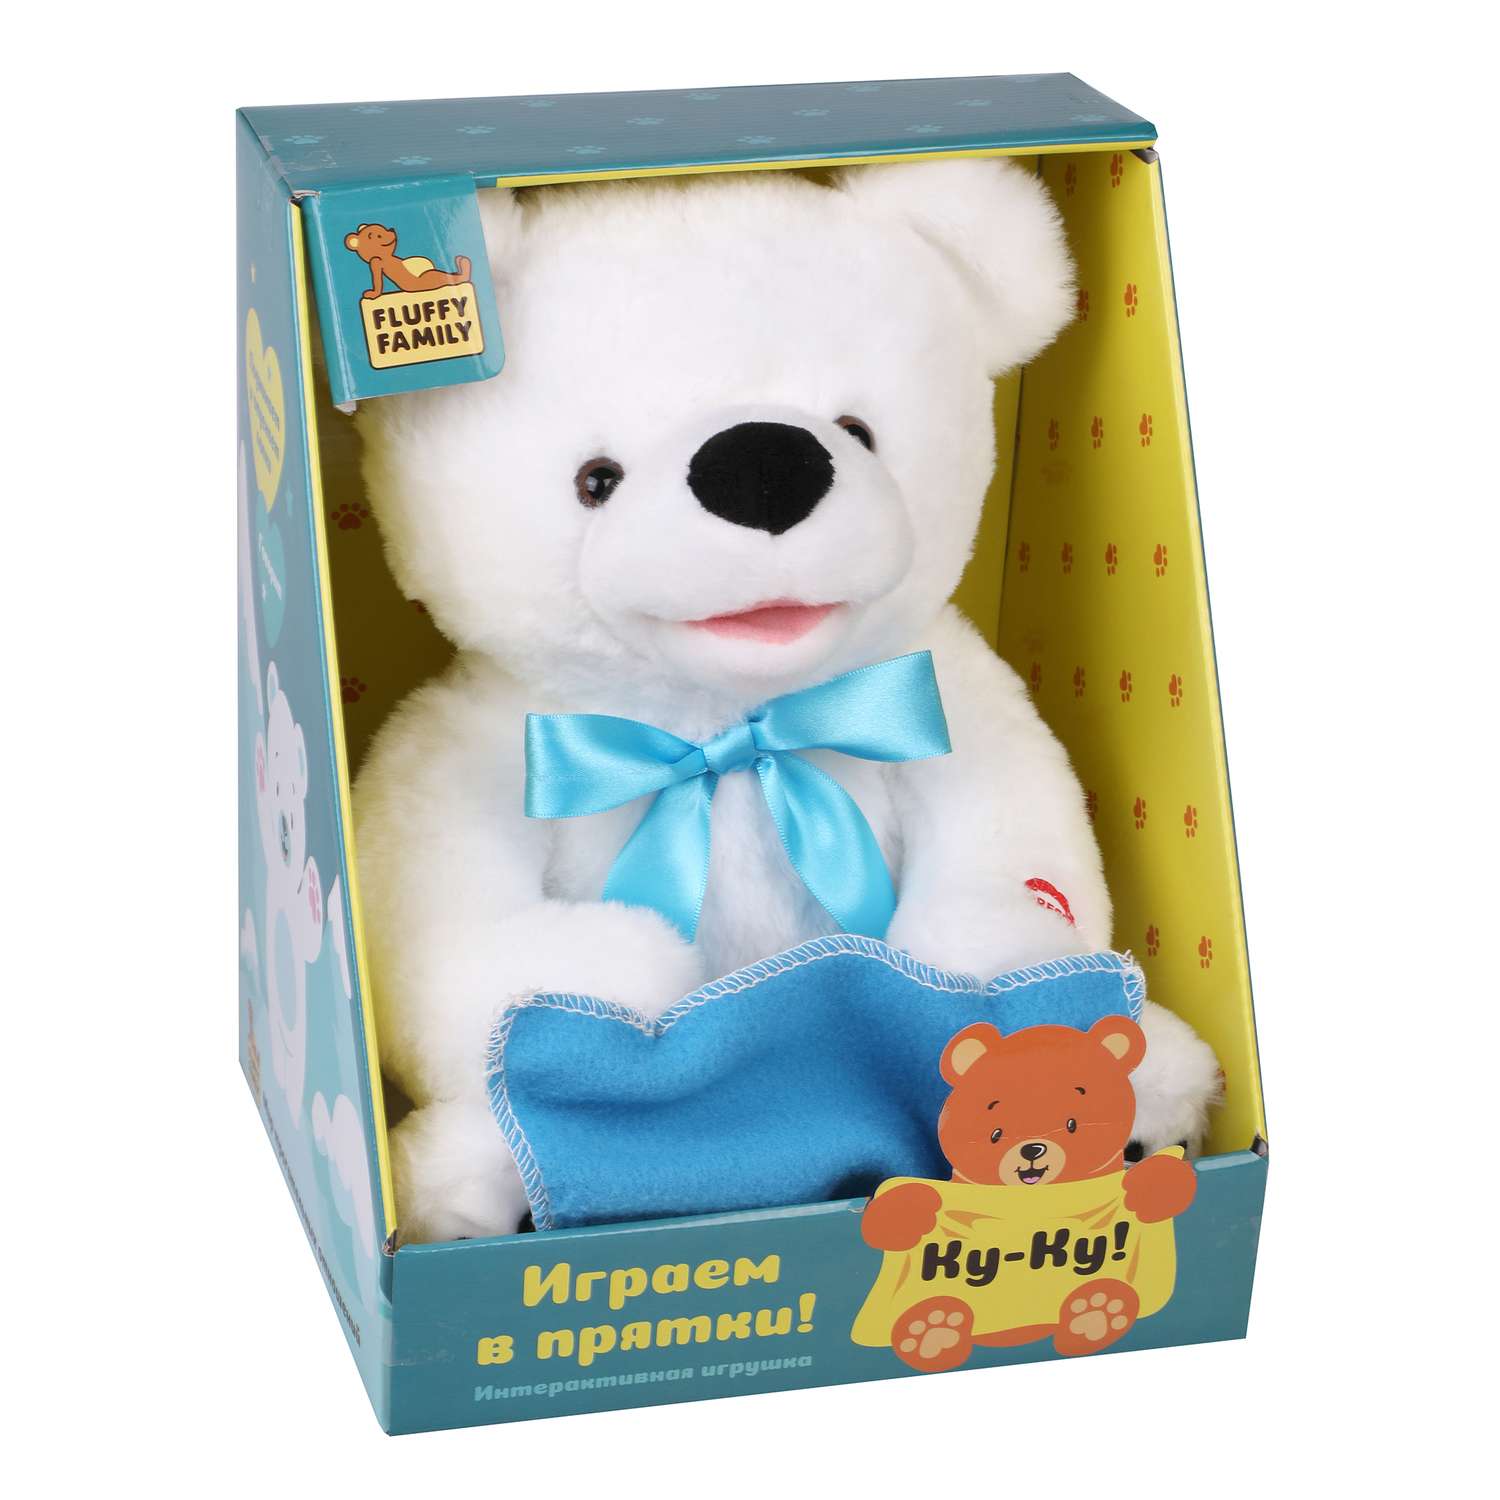 Мягкая игрушка Fluffy Family Мишка интерактивный Ку-ку 27 см Белый - фото 7